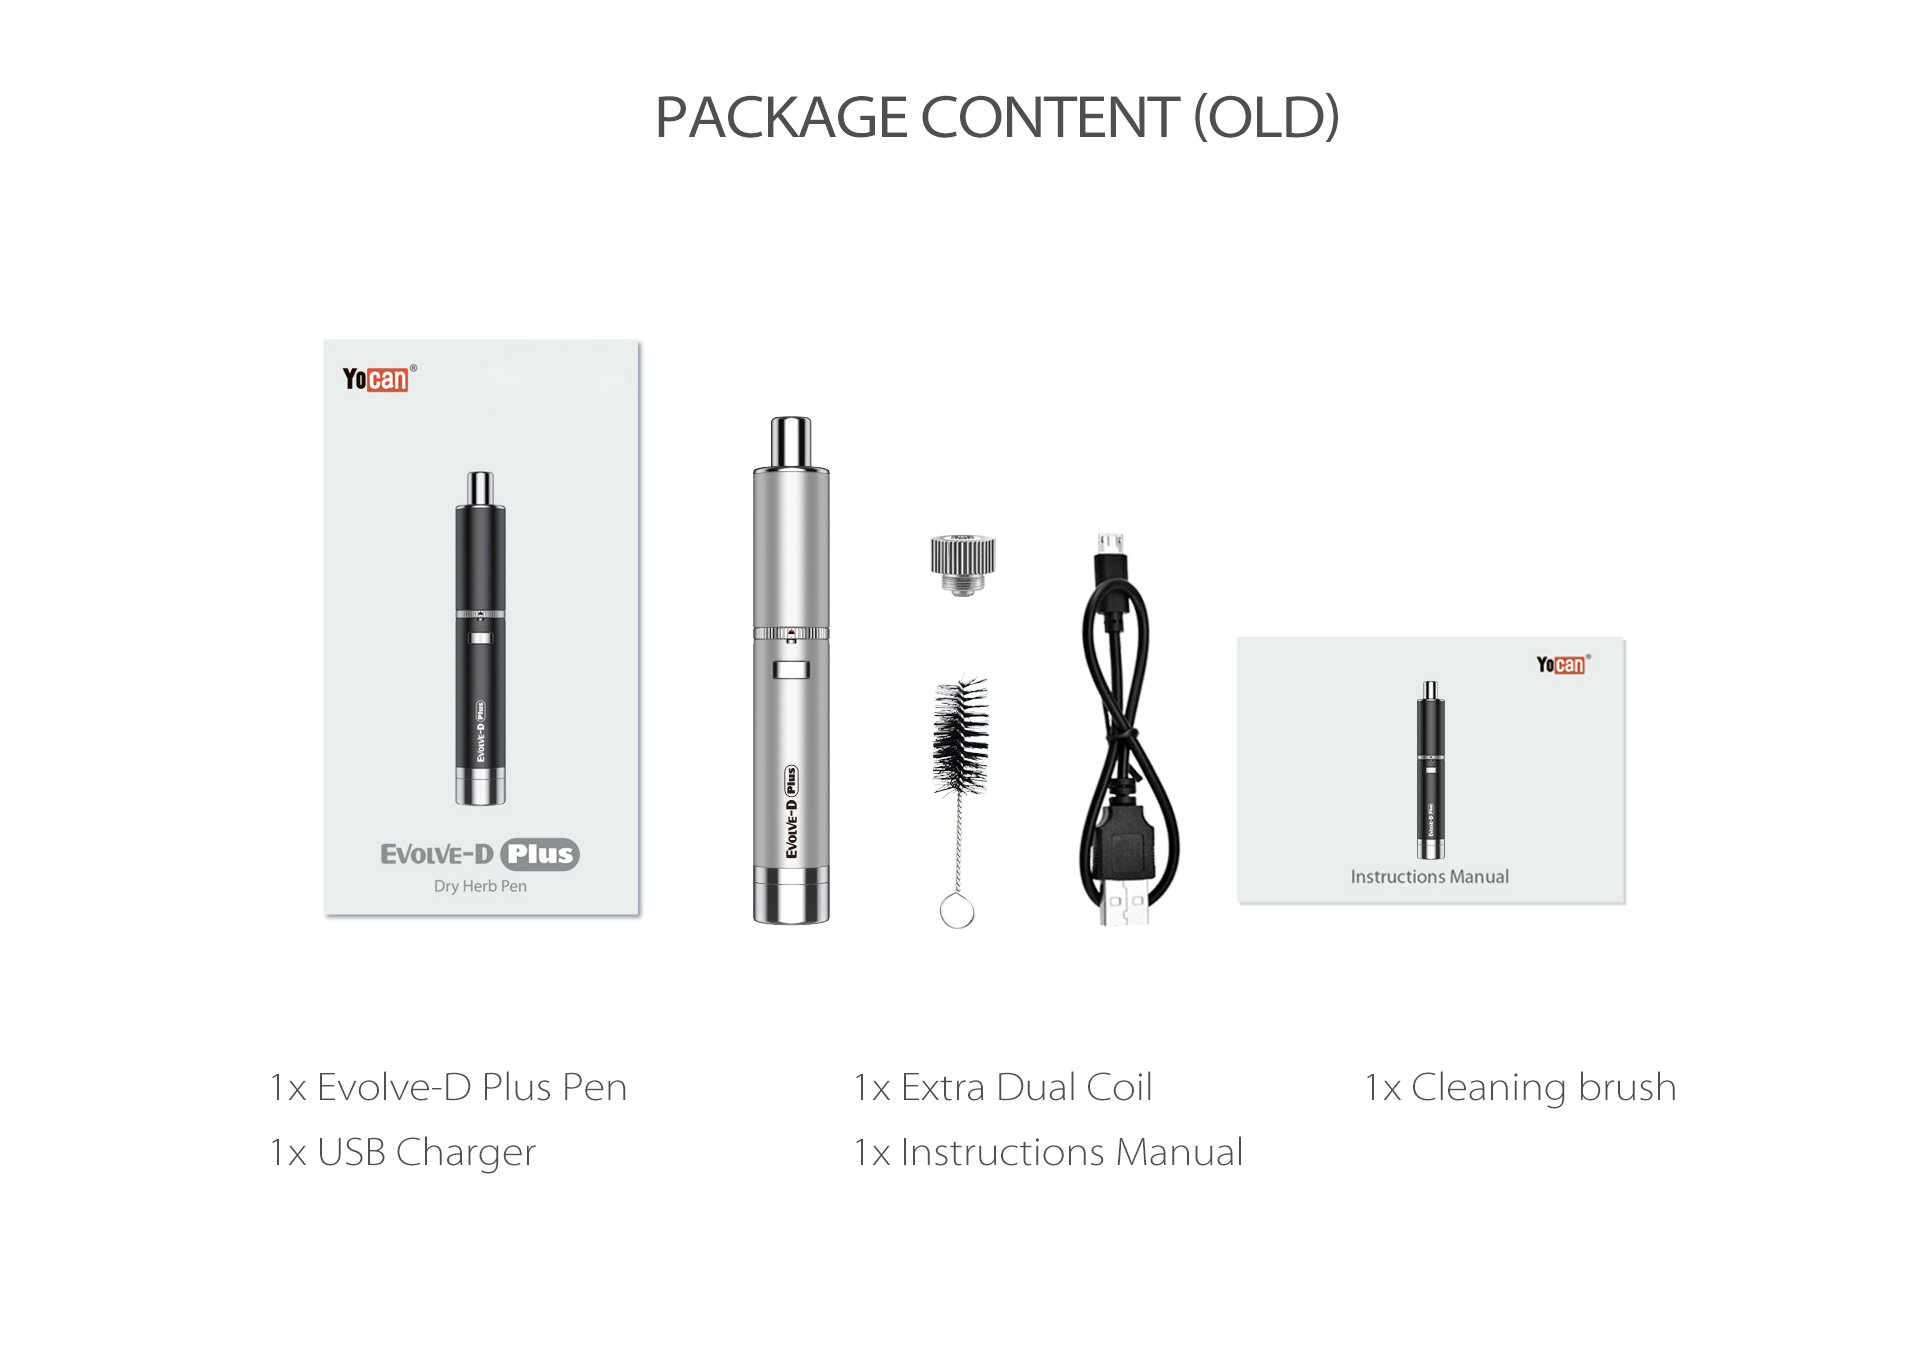 Yocan Evolve-D Plus vaporizer pen package content.